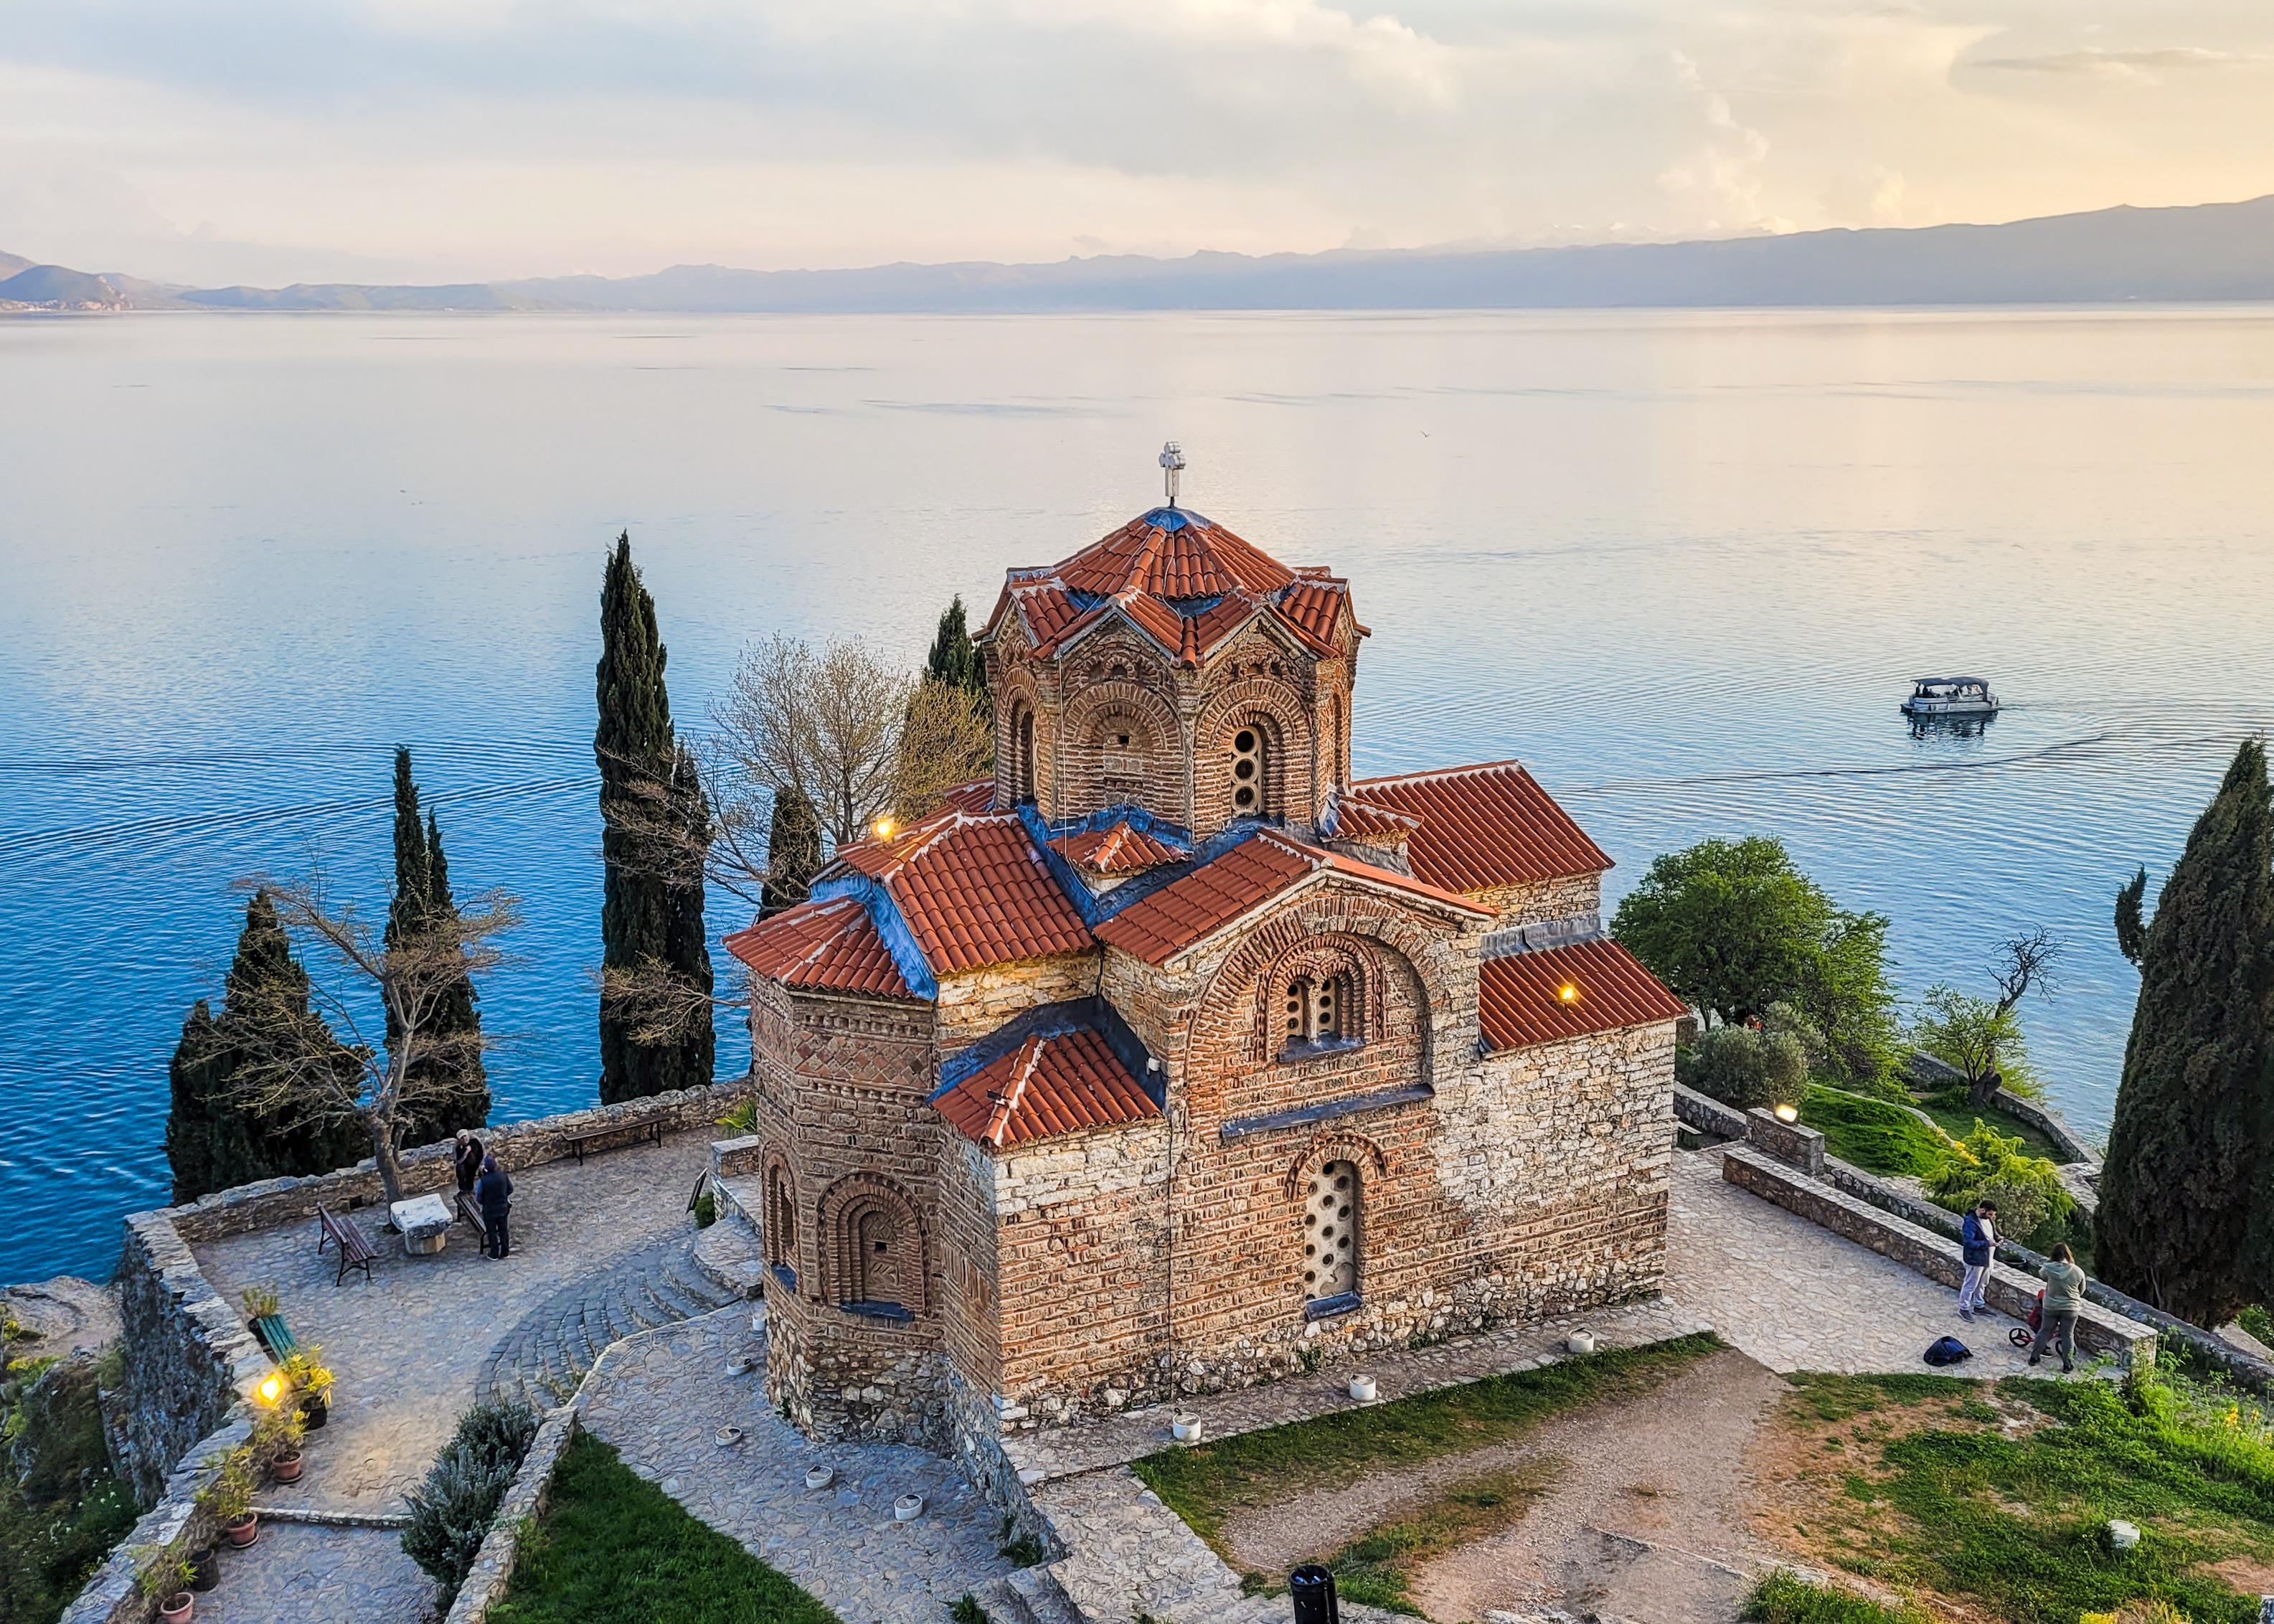 Le lac d'Ohrid